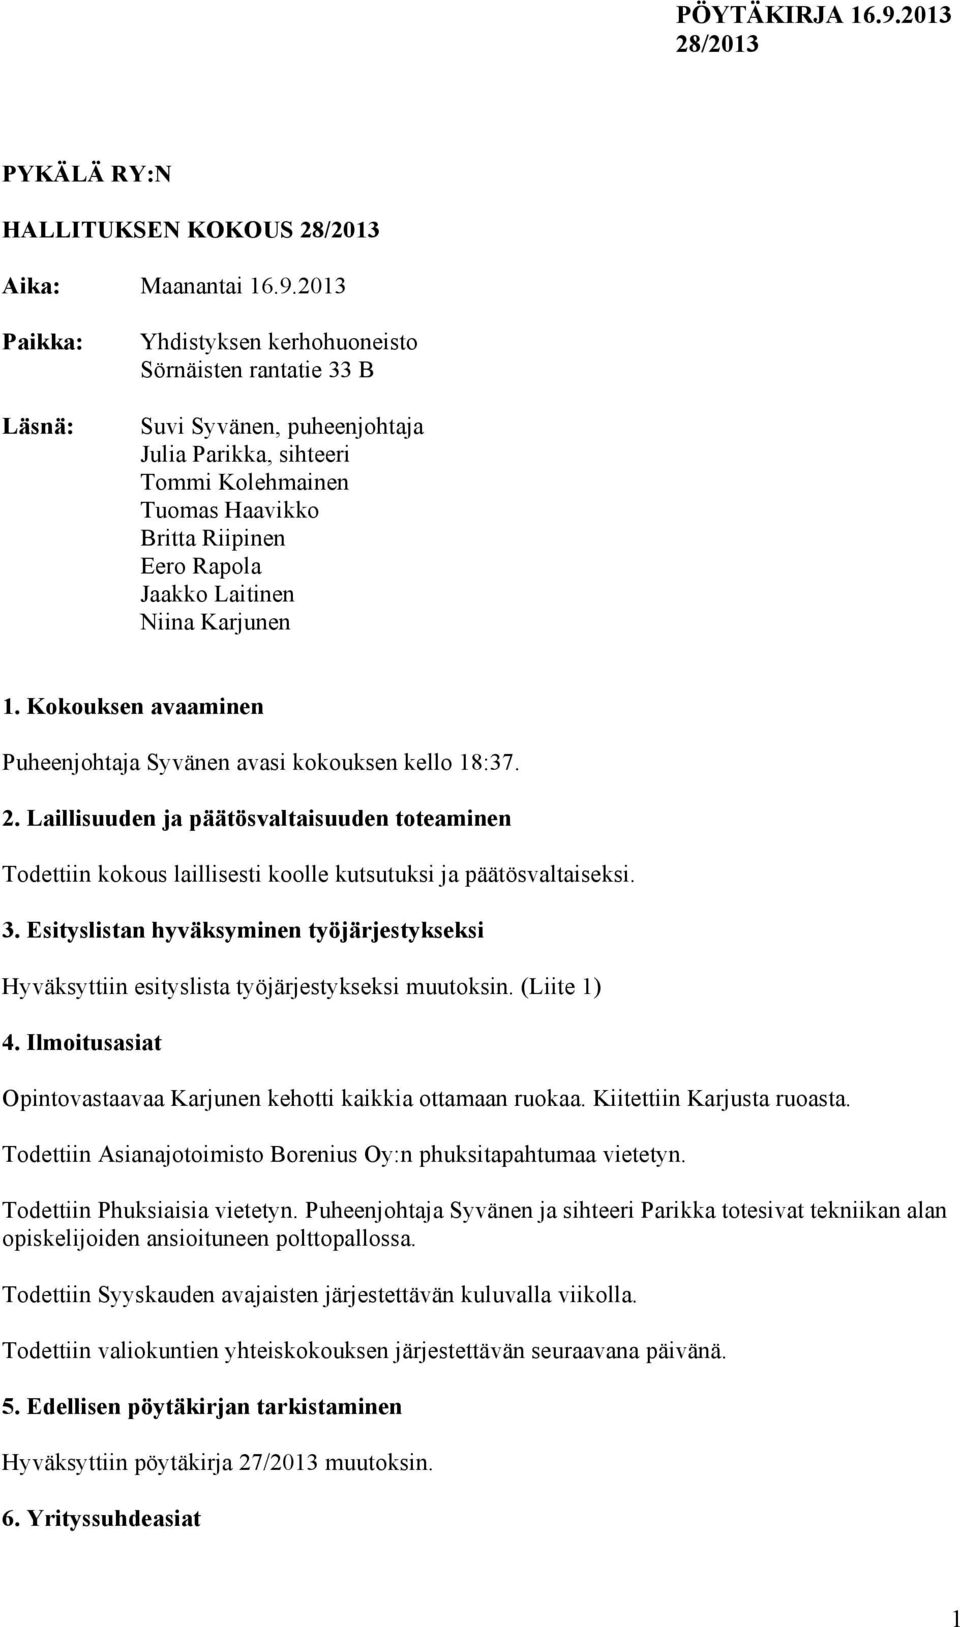 Laitinen Niina Karjunen 1. Kokouksen avaaminen Puheenjohtaja Syvänen avasi kokouksen kello 18:37. 2.